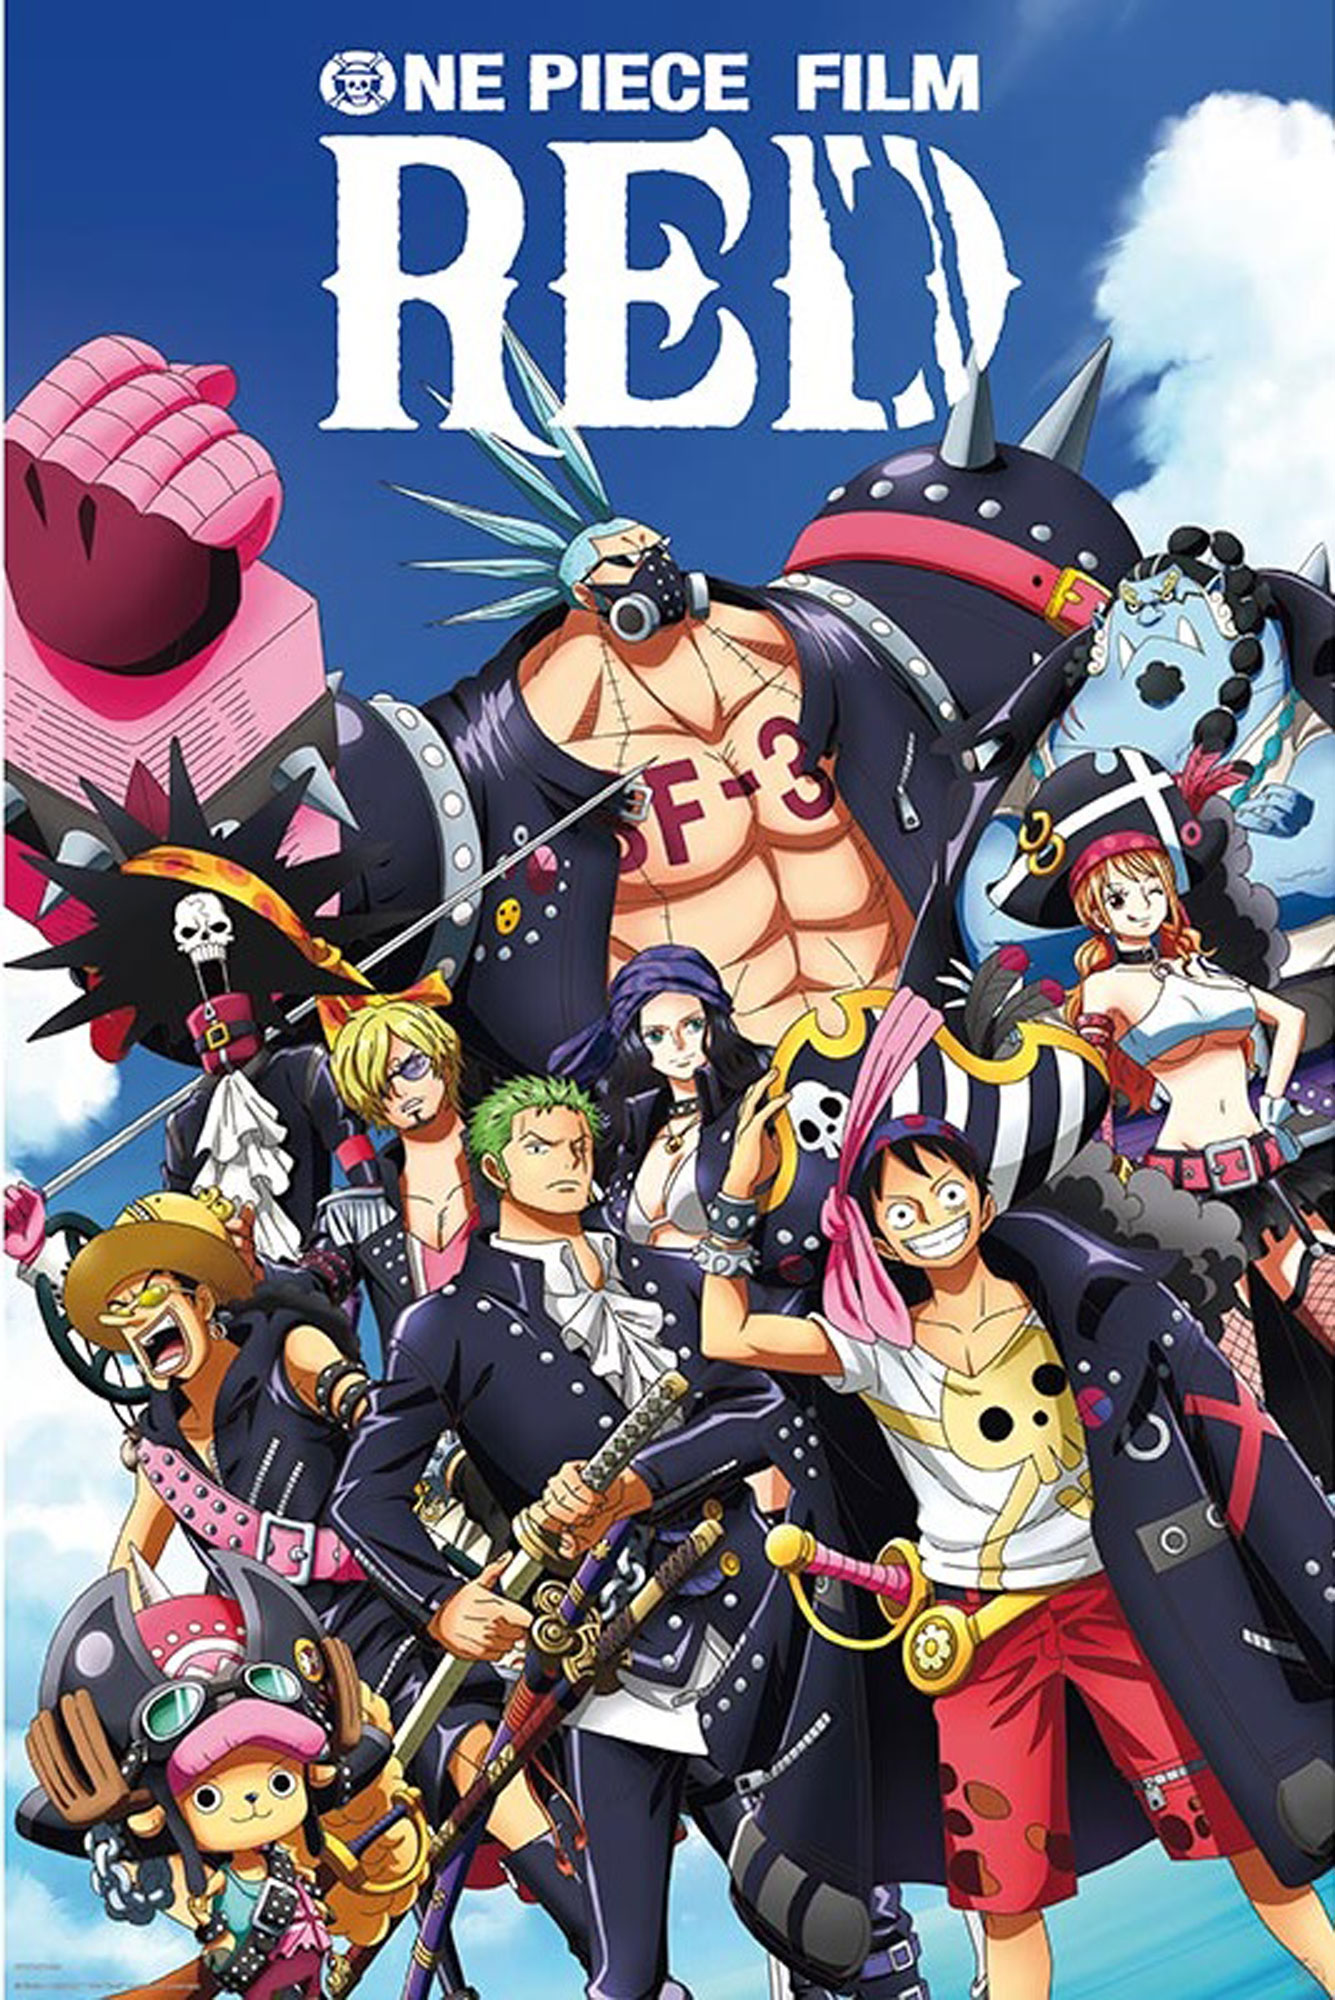 One Piece - Crew Full